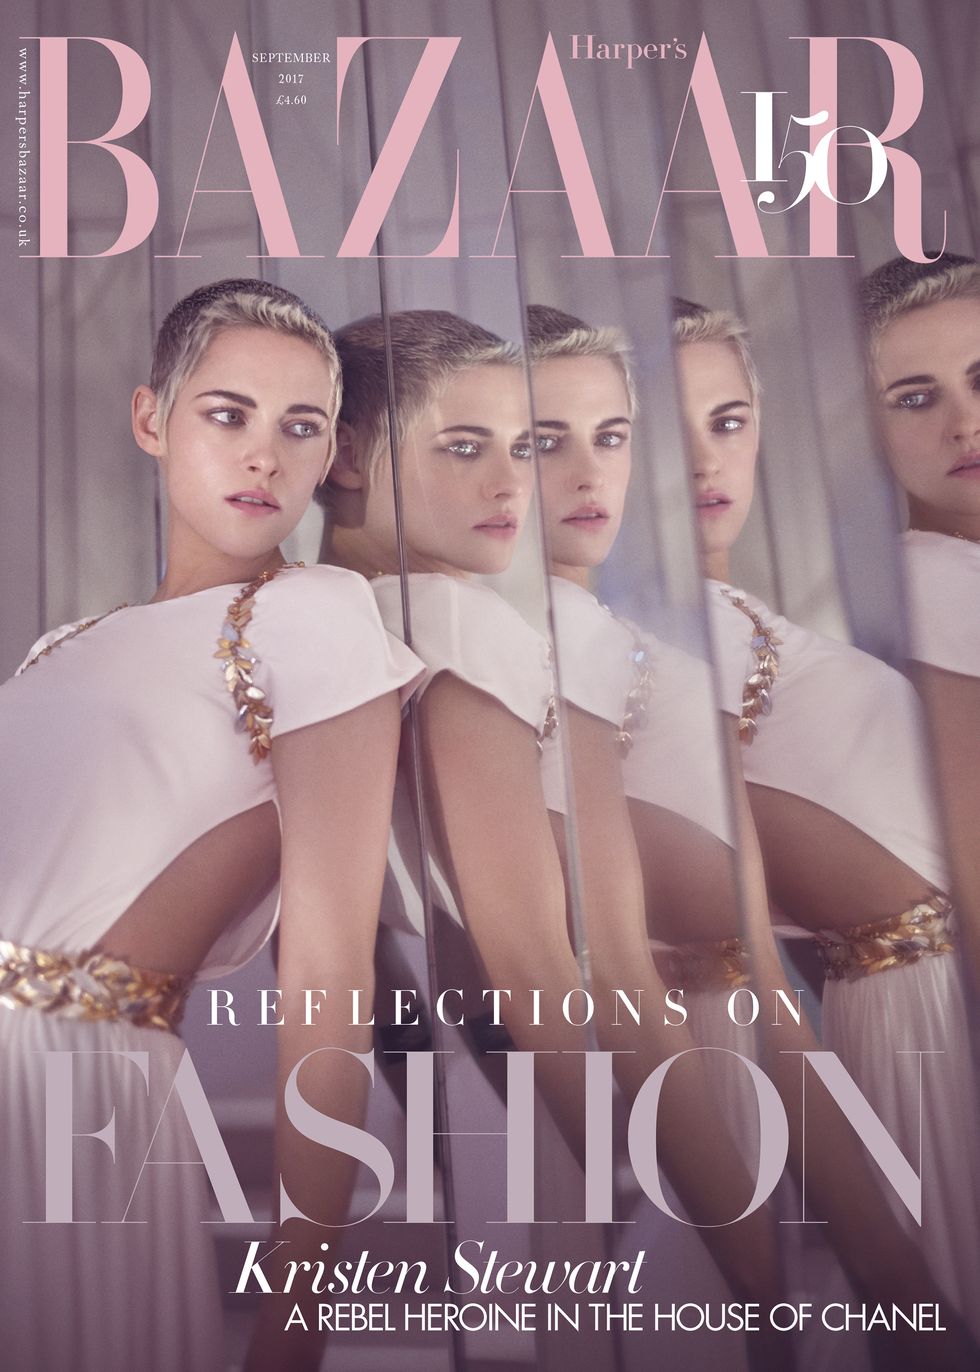 Kristen Stewart for Harper's Bazaar September 2017 issue